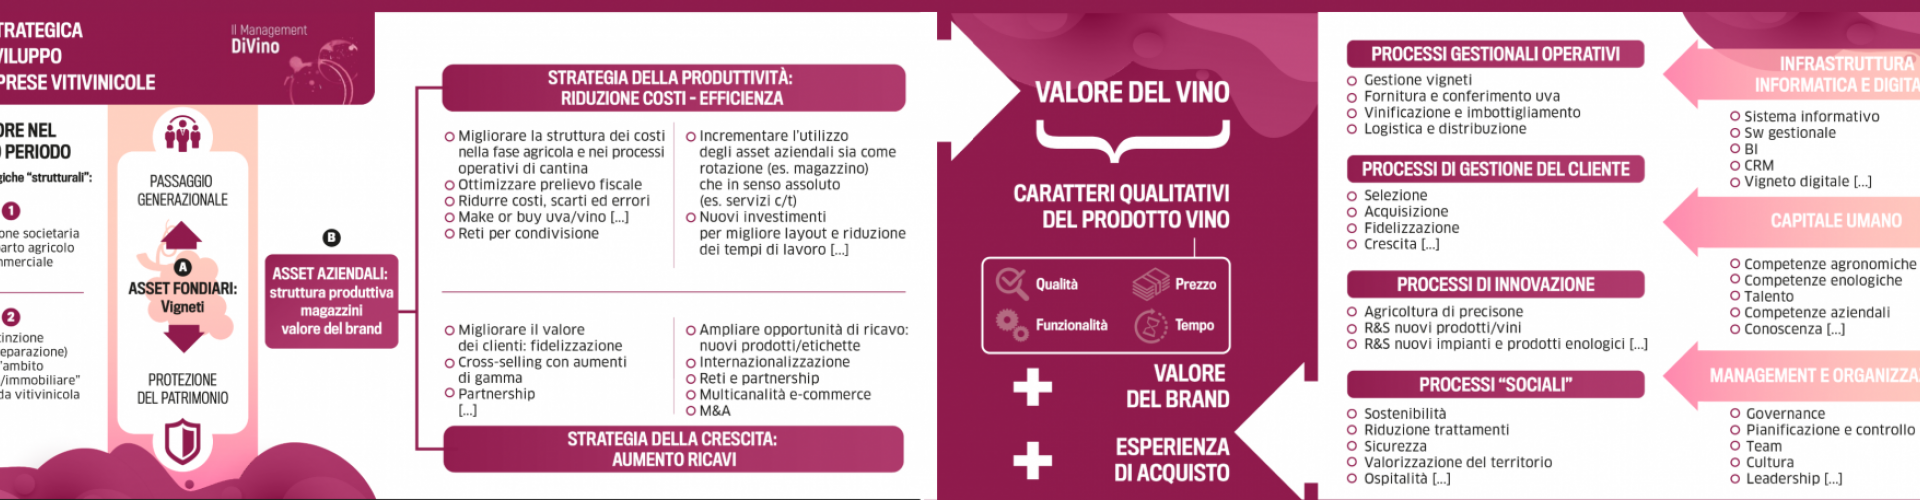 Intervista a Luca Castagnetti - La Mappa Strategica per le aziende vitivinicole